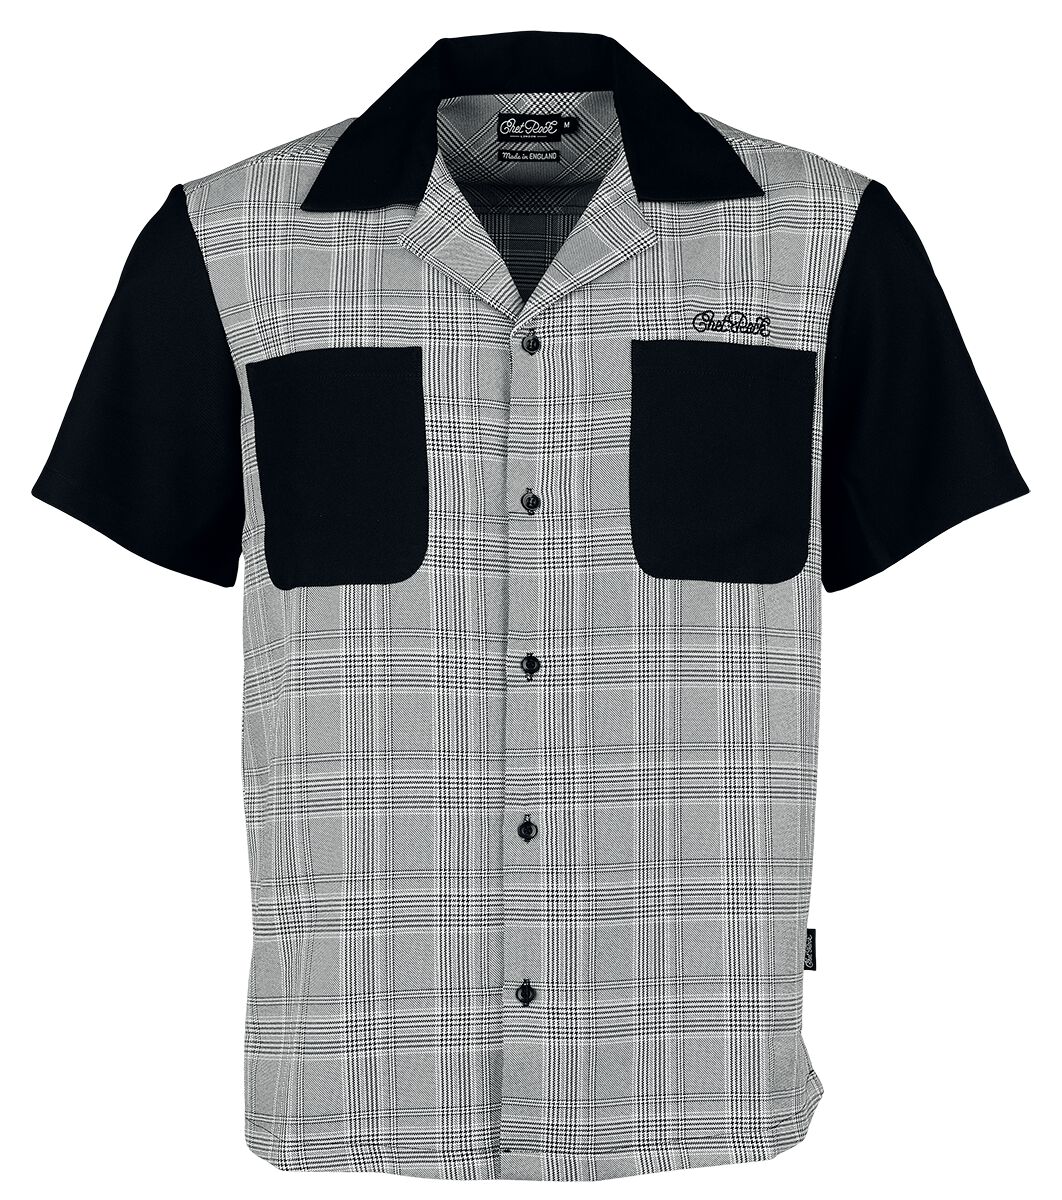 Chet Rock - Rockabilly Kurzarmhemd - Arlo Shirt - S bis 4XL - für Männer - Größe XXL - schwarz/weiß von Chet Rock